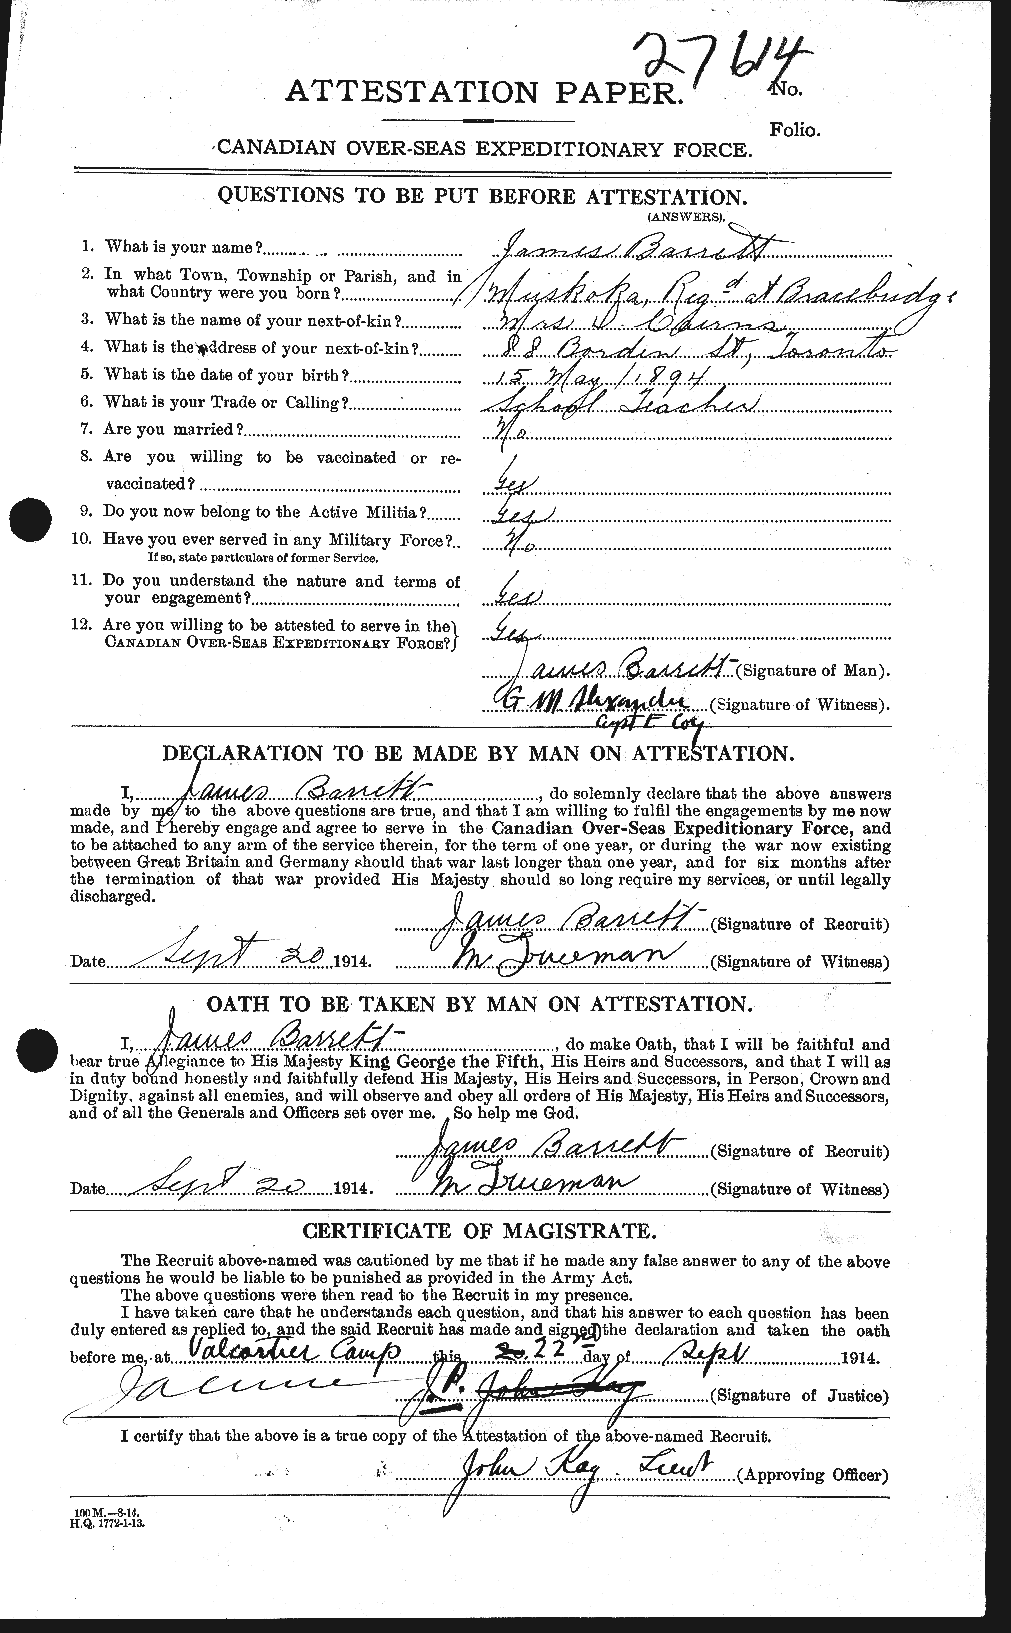 Dossiers du Personnel de la Première Guerre mondiale - CEC 220265a